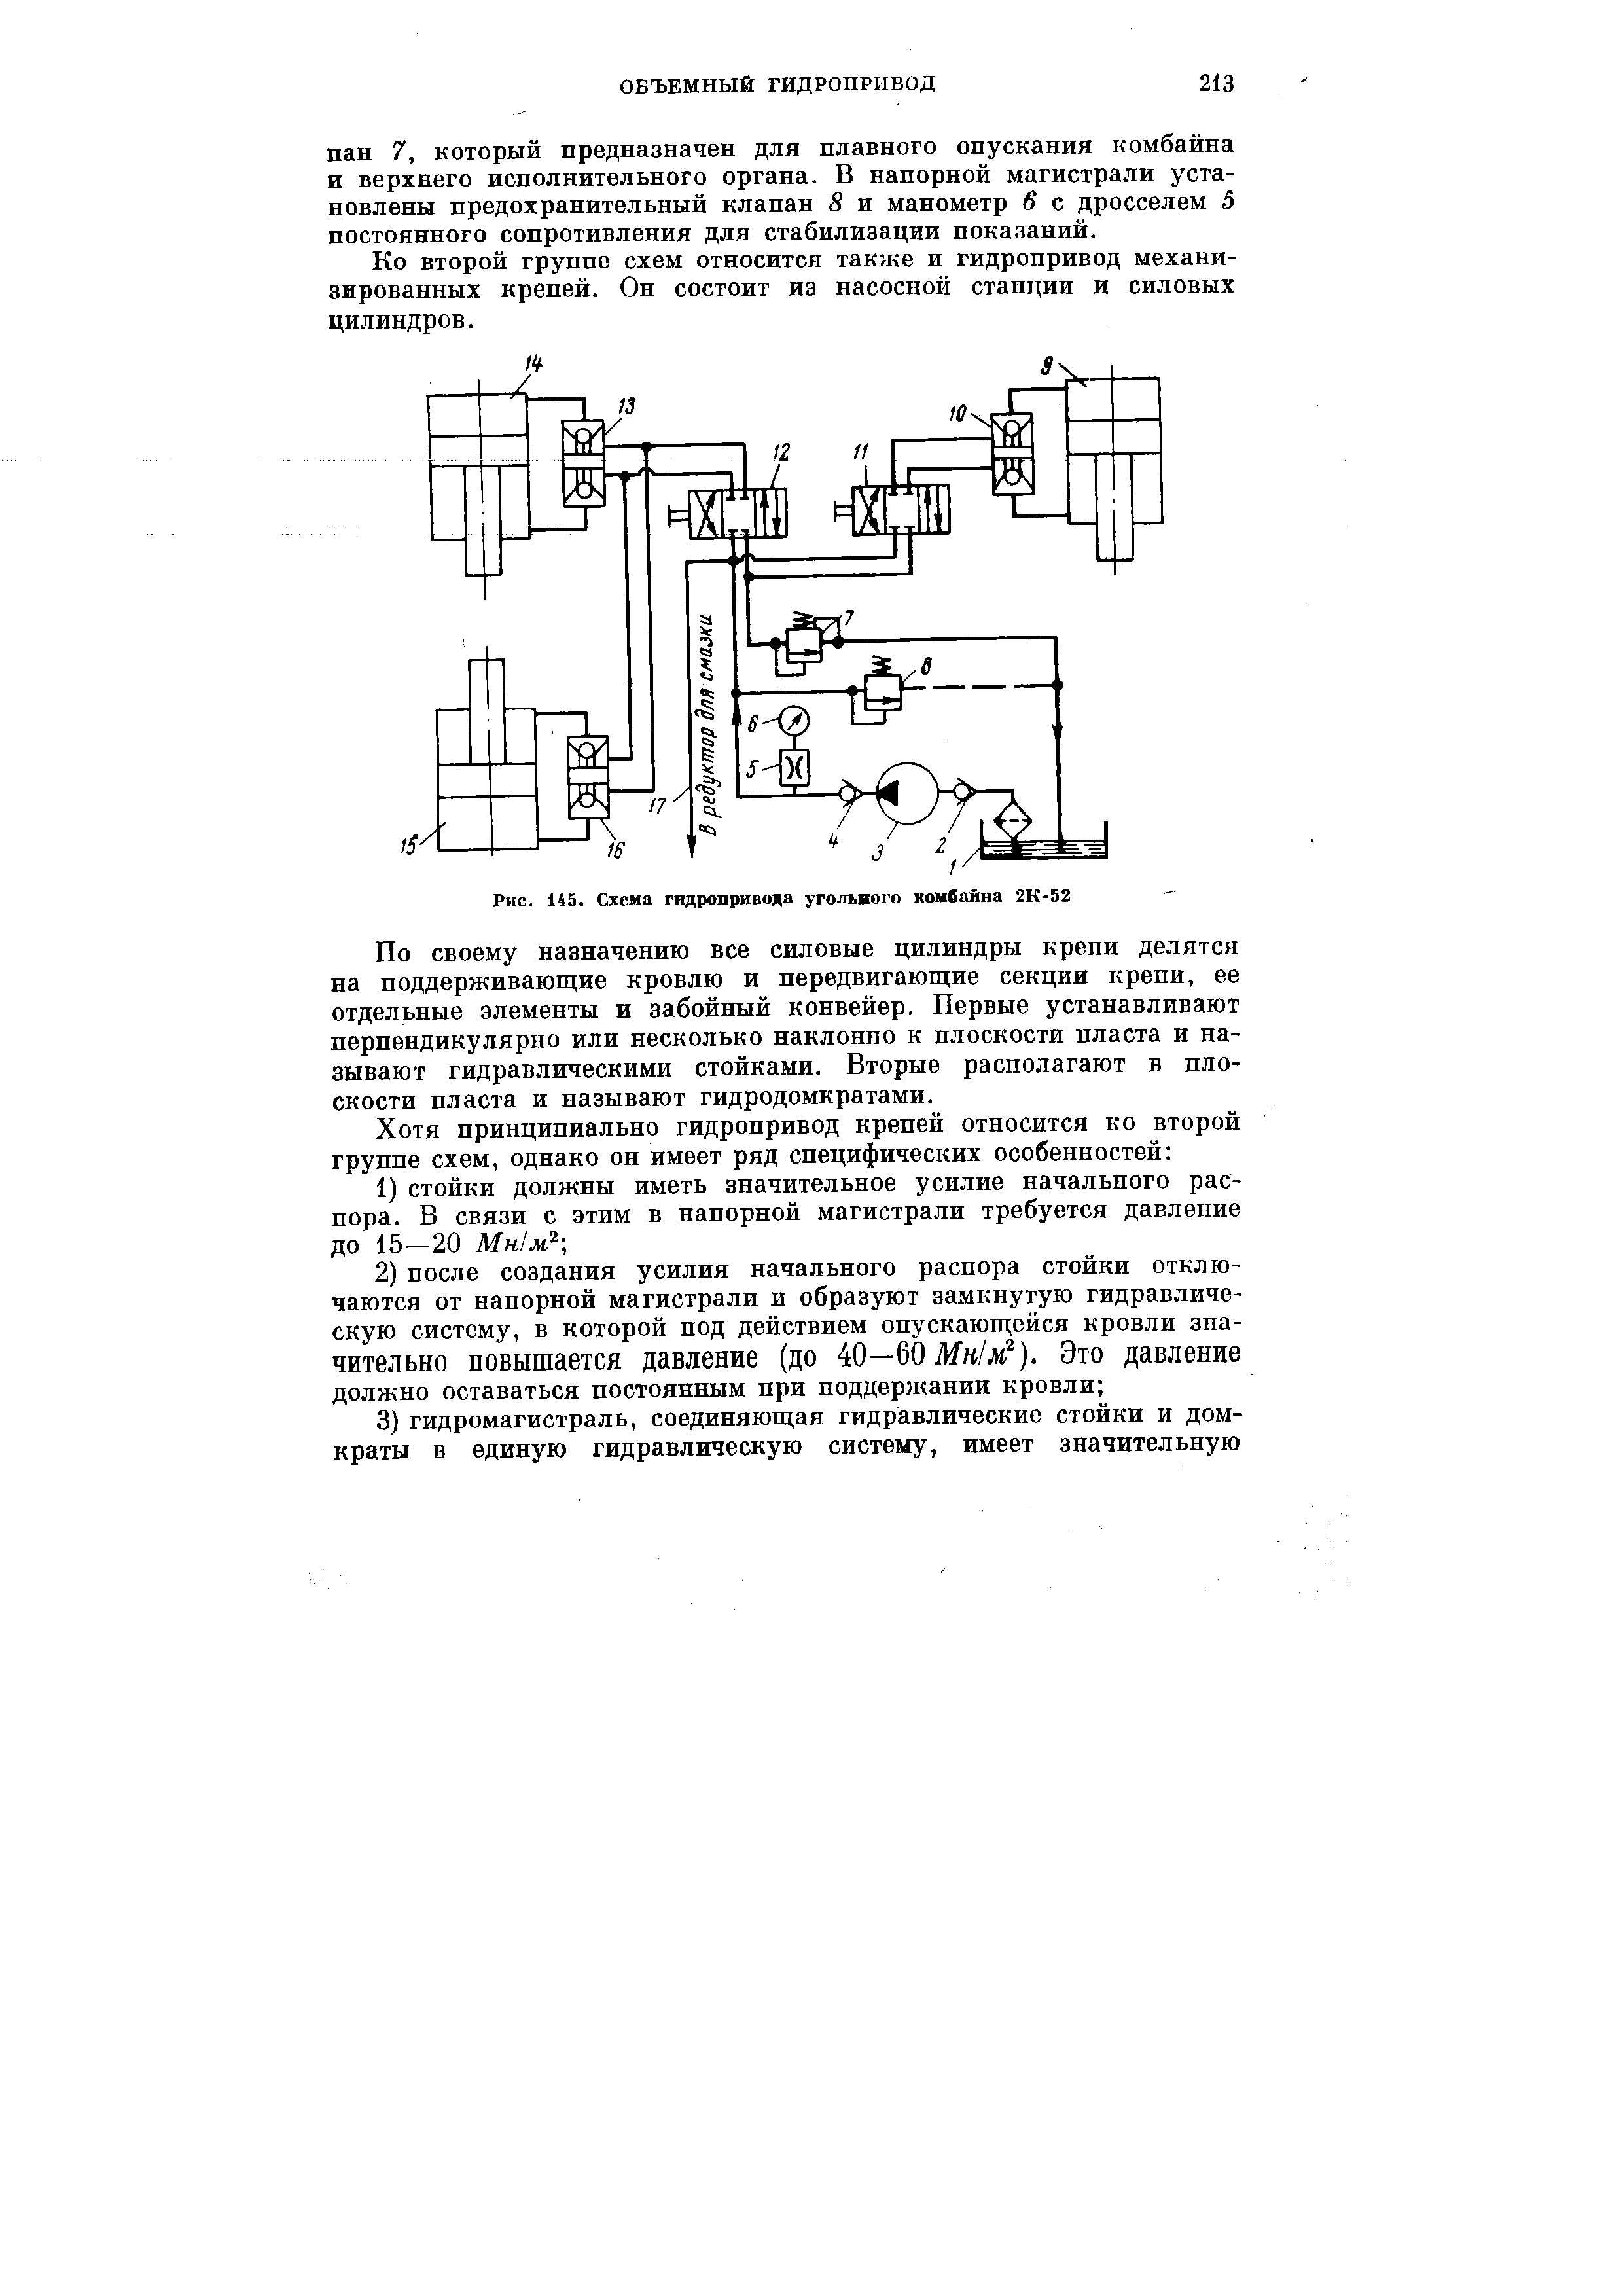 Рис. 145. Схема гидропривода угольного комбайна 2К 52
